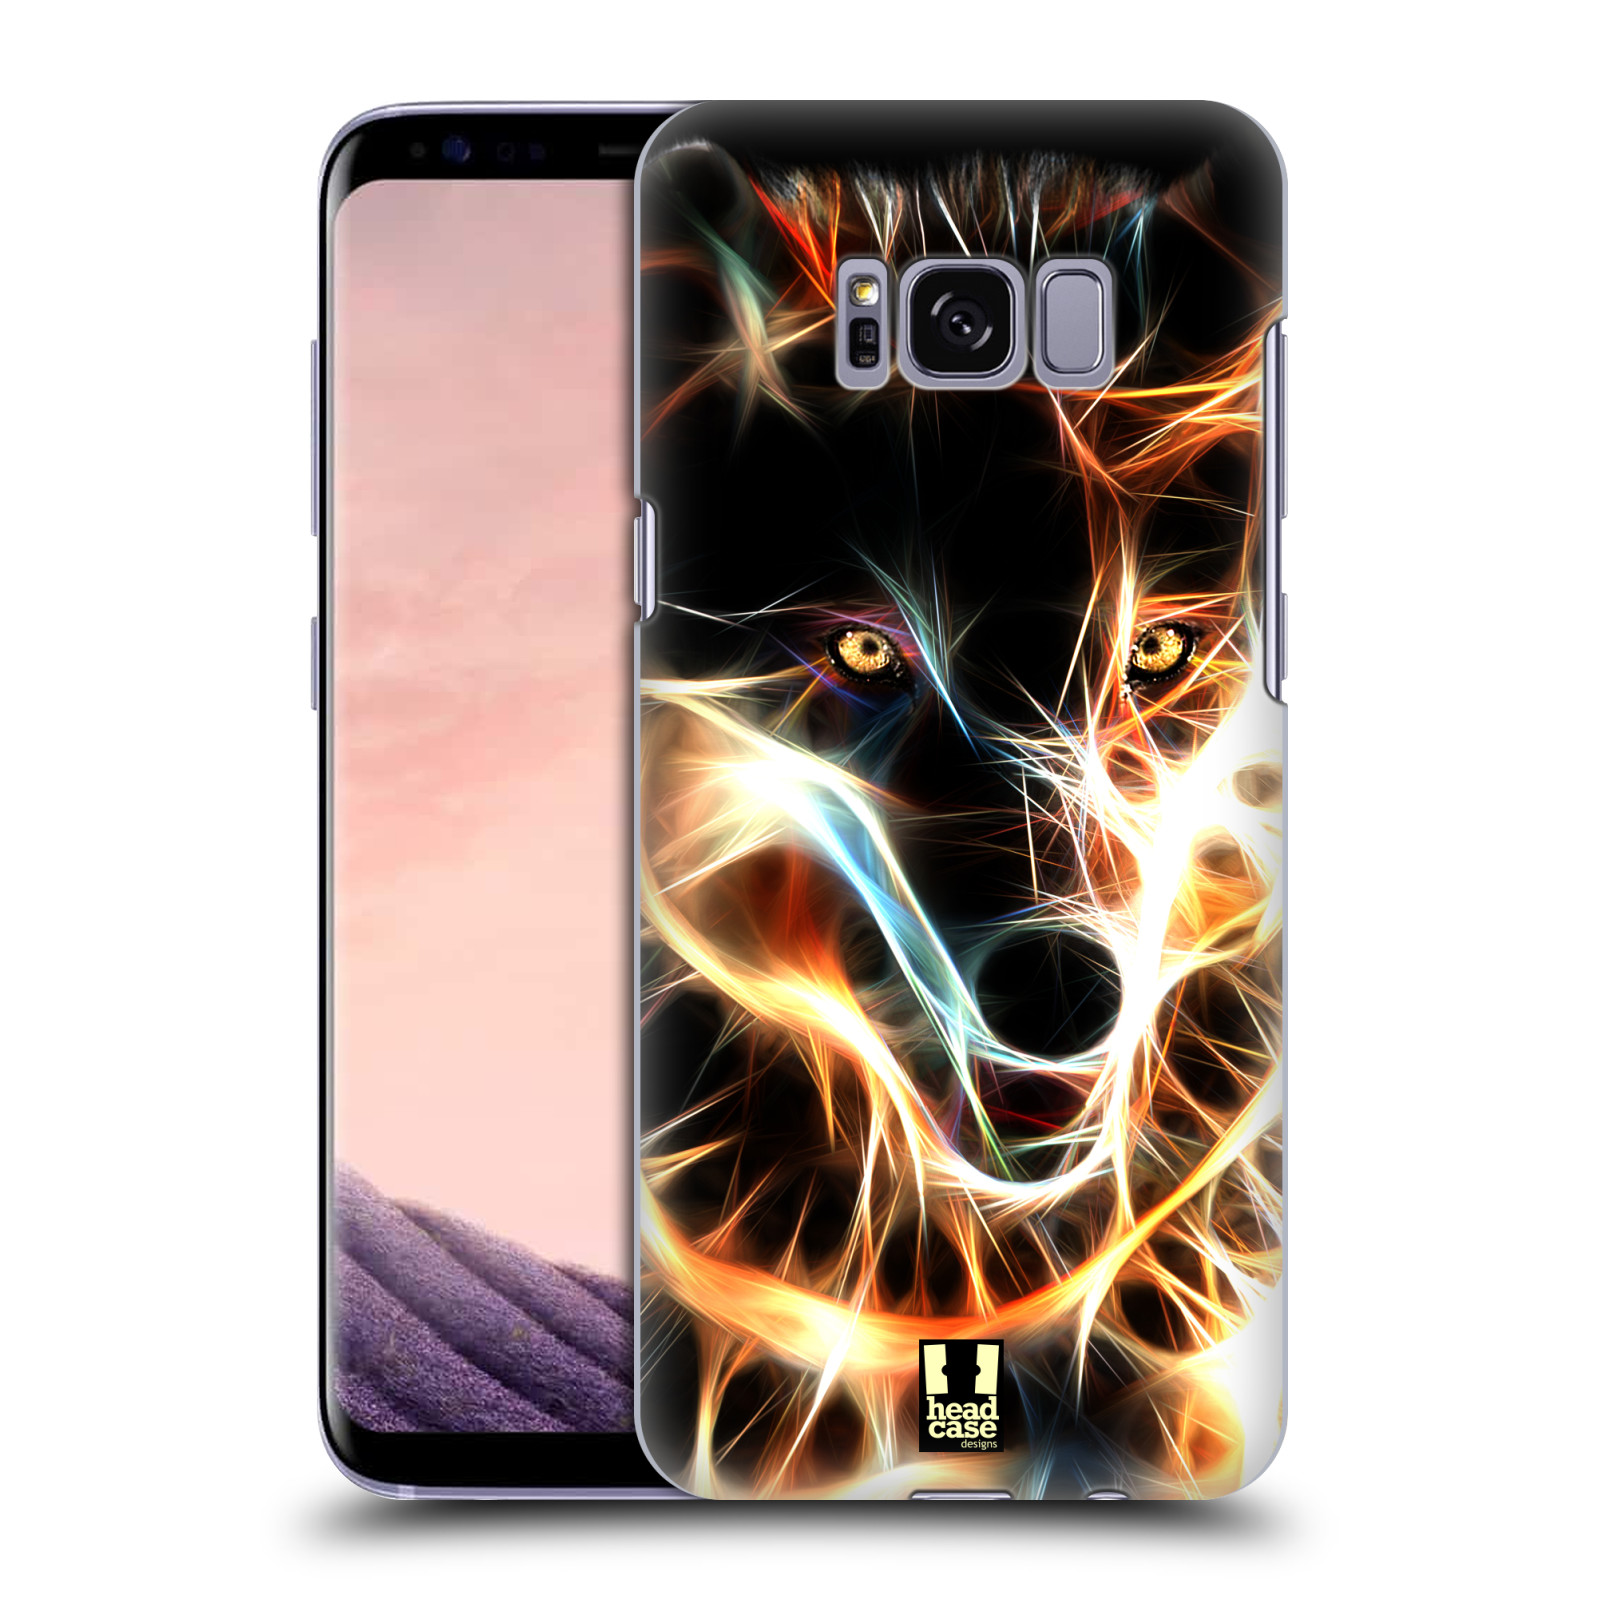 Pouzdro na mobil Samsung Galaxy S8 - HEAD CASE - Ohnivý vlk